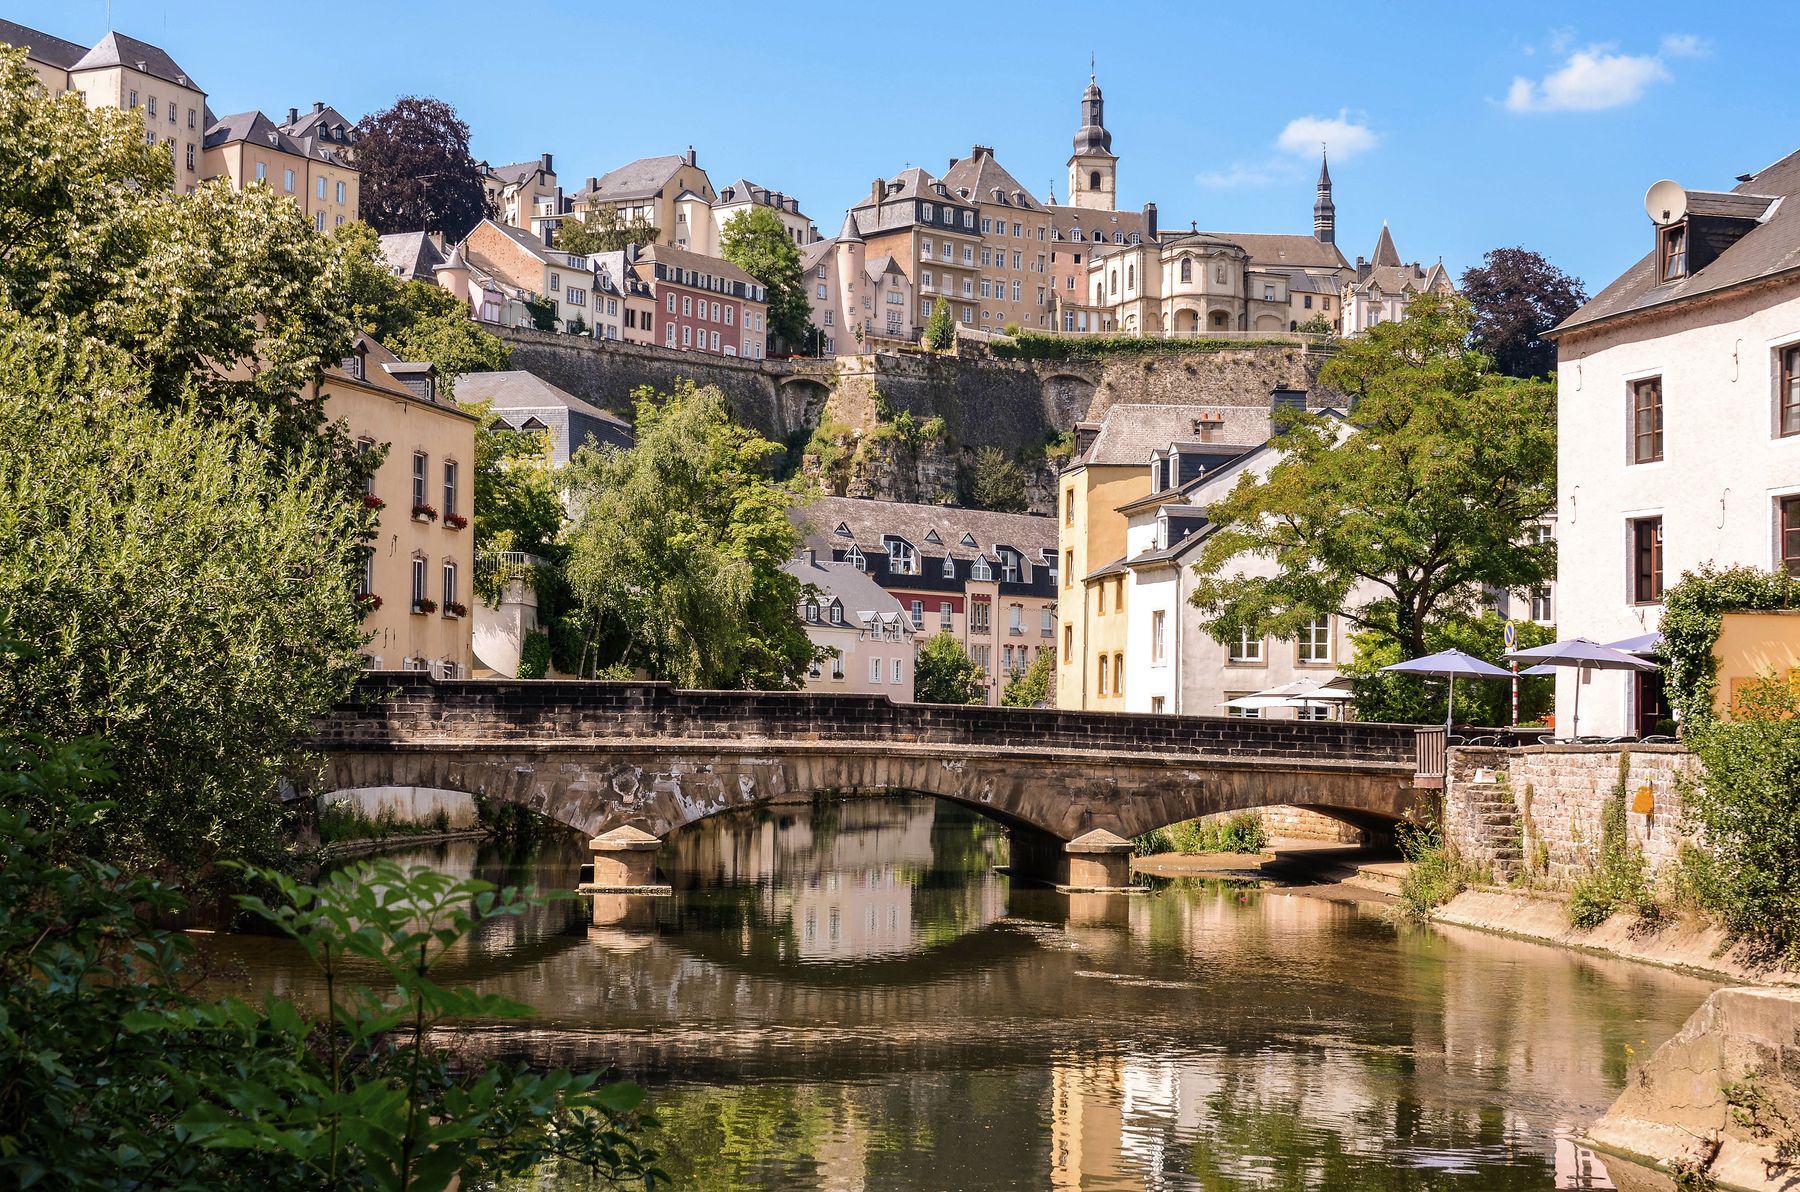 Topp 5 saker att göra i Luxemburg | Skyscanner Sverige